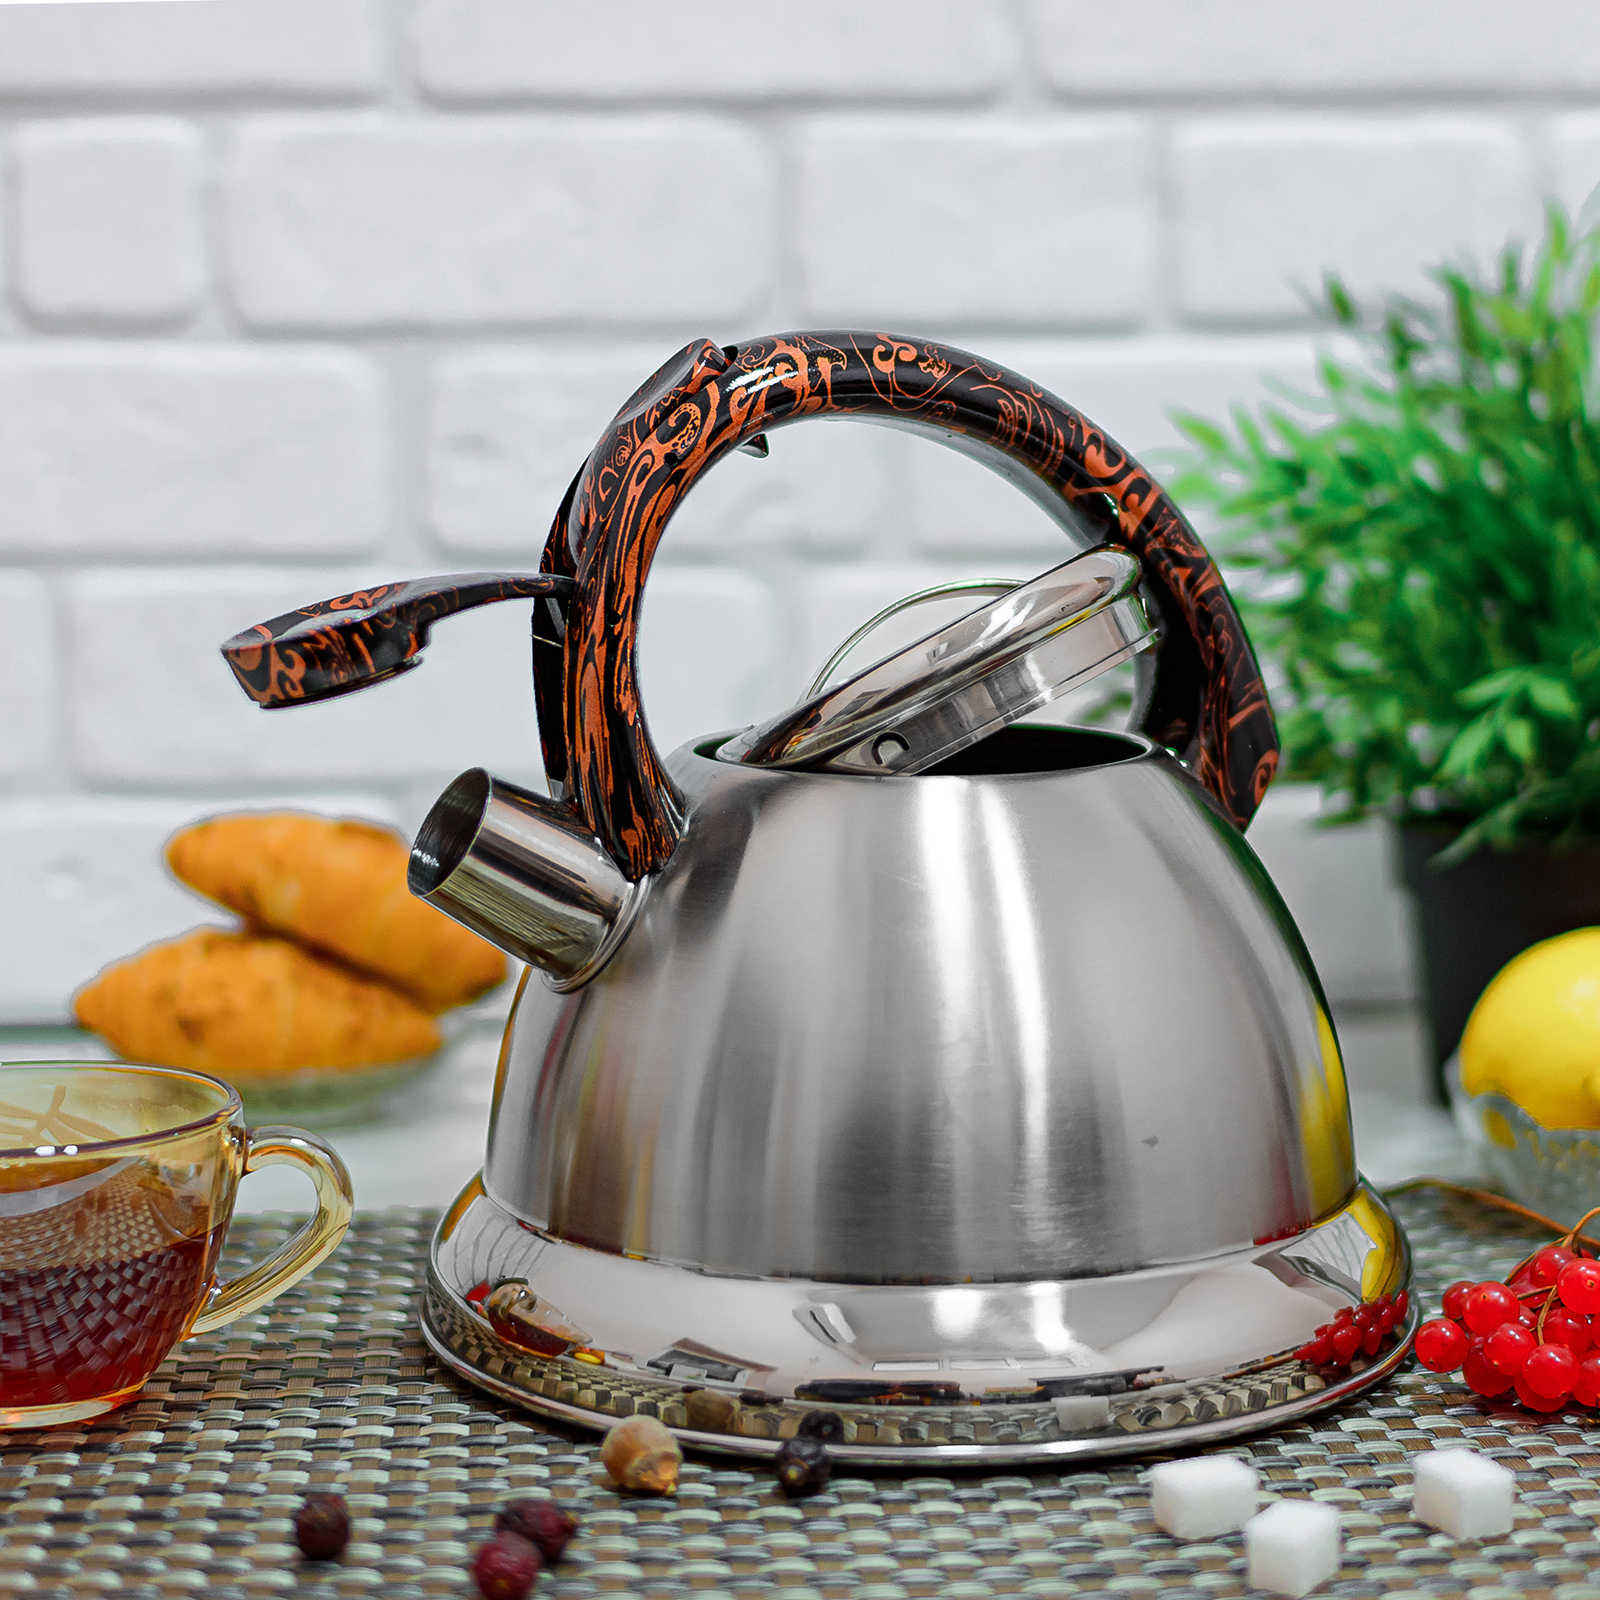 Чайник для плиты A-Plus - 1240 - 3 л ✅ базовая цена $11.48 ✔ Опт ✔ Скидки ✔ Заходите! - Интернет-магазин ✅ Фортуна-опт ✅